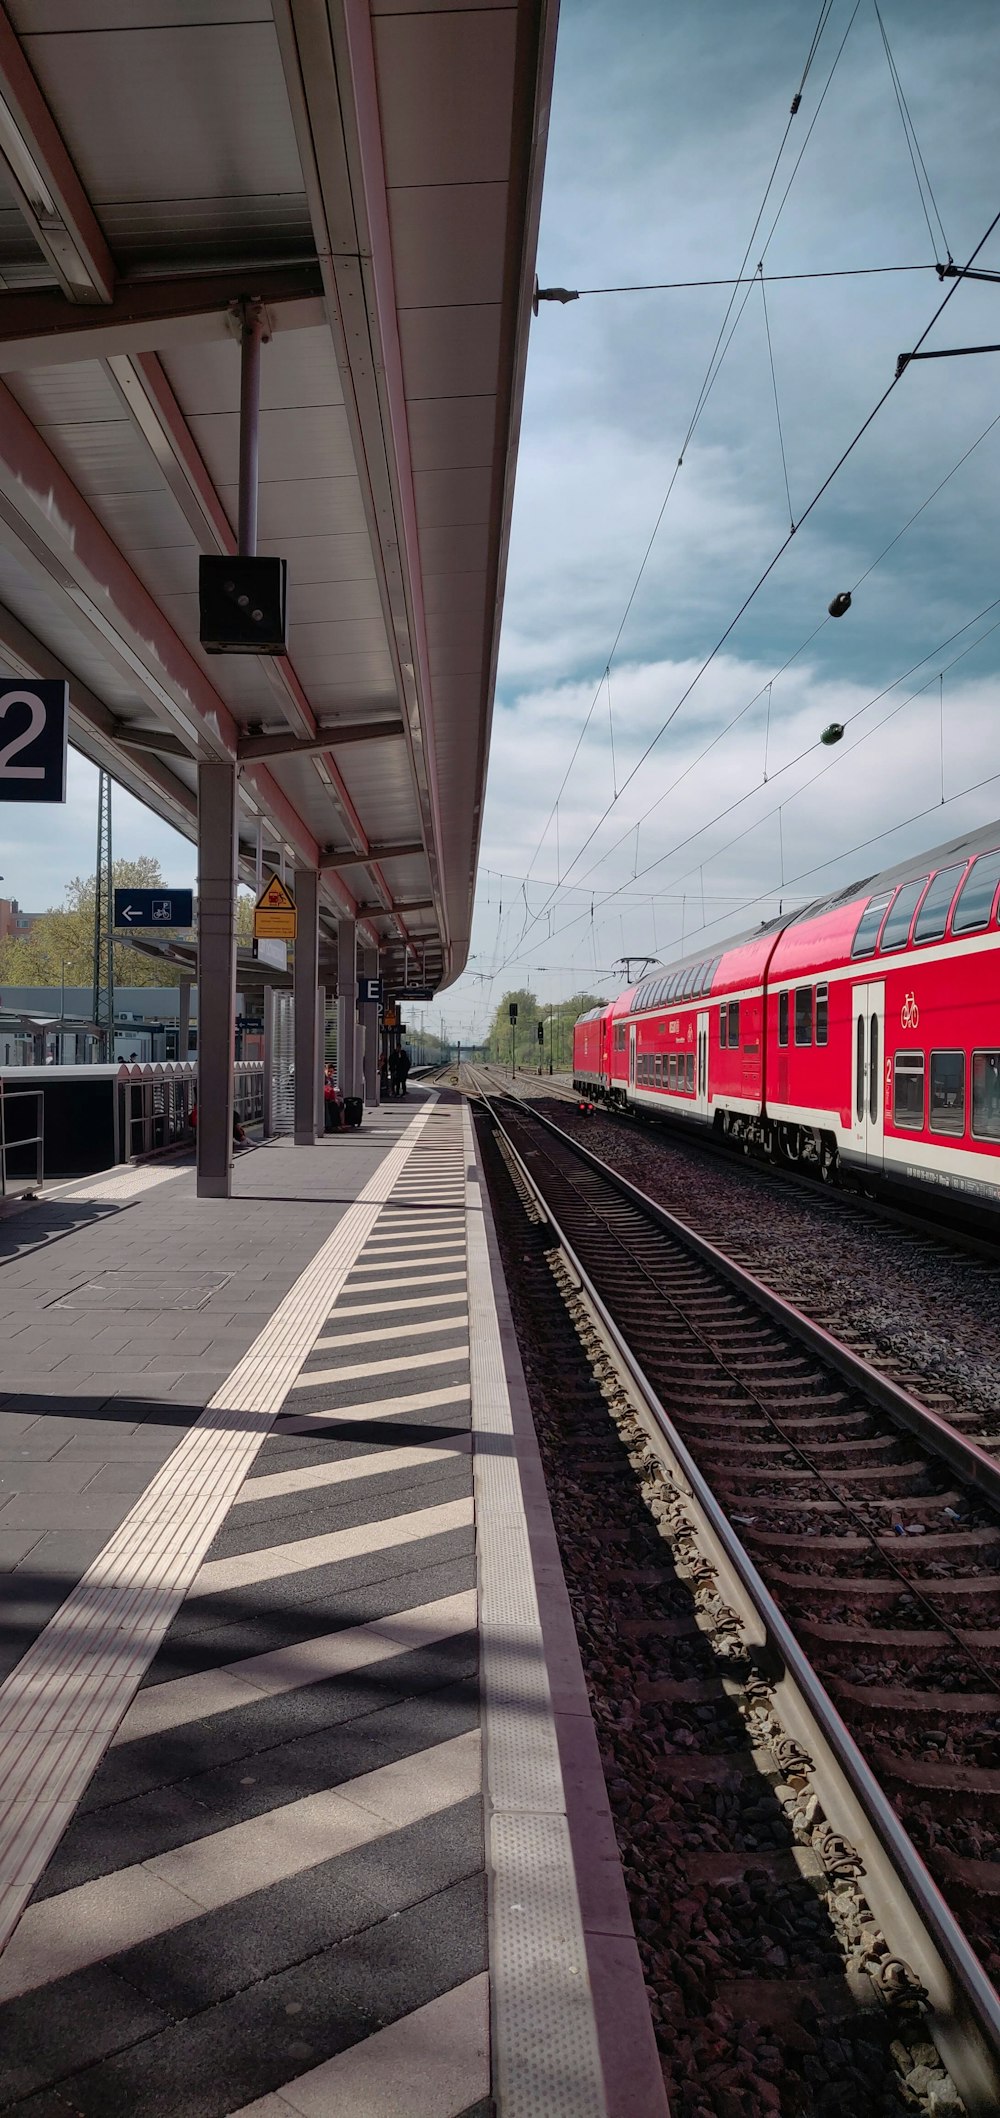 Tren rojo y blanco en la estación de tren durante el día